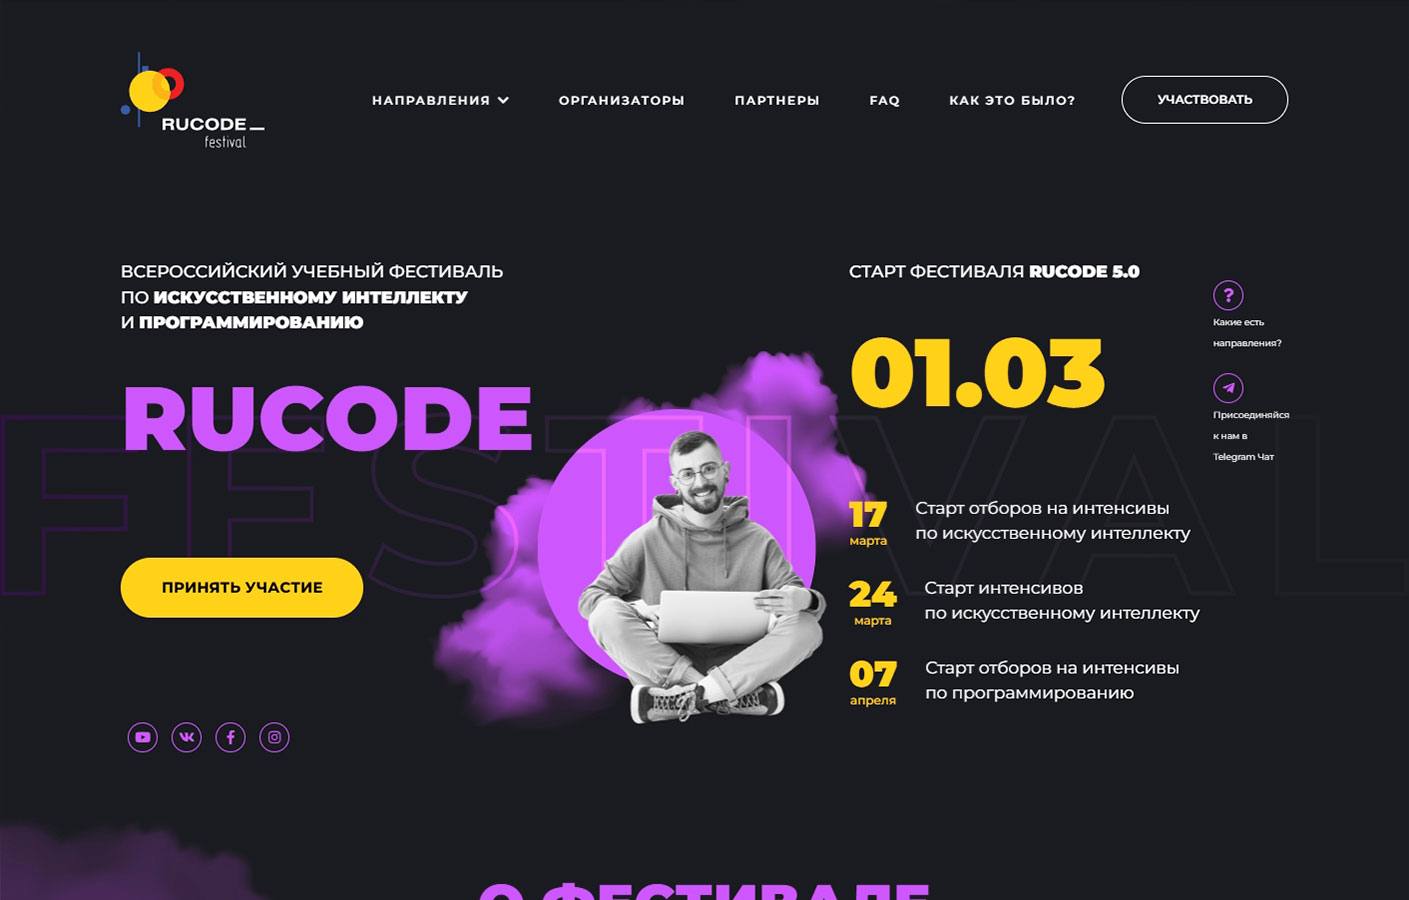 Rucode - Всероссийский учебный фестиваль по искусственному интеллекту и программированию